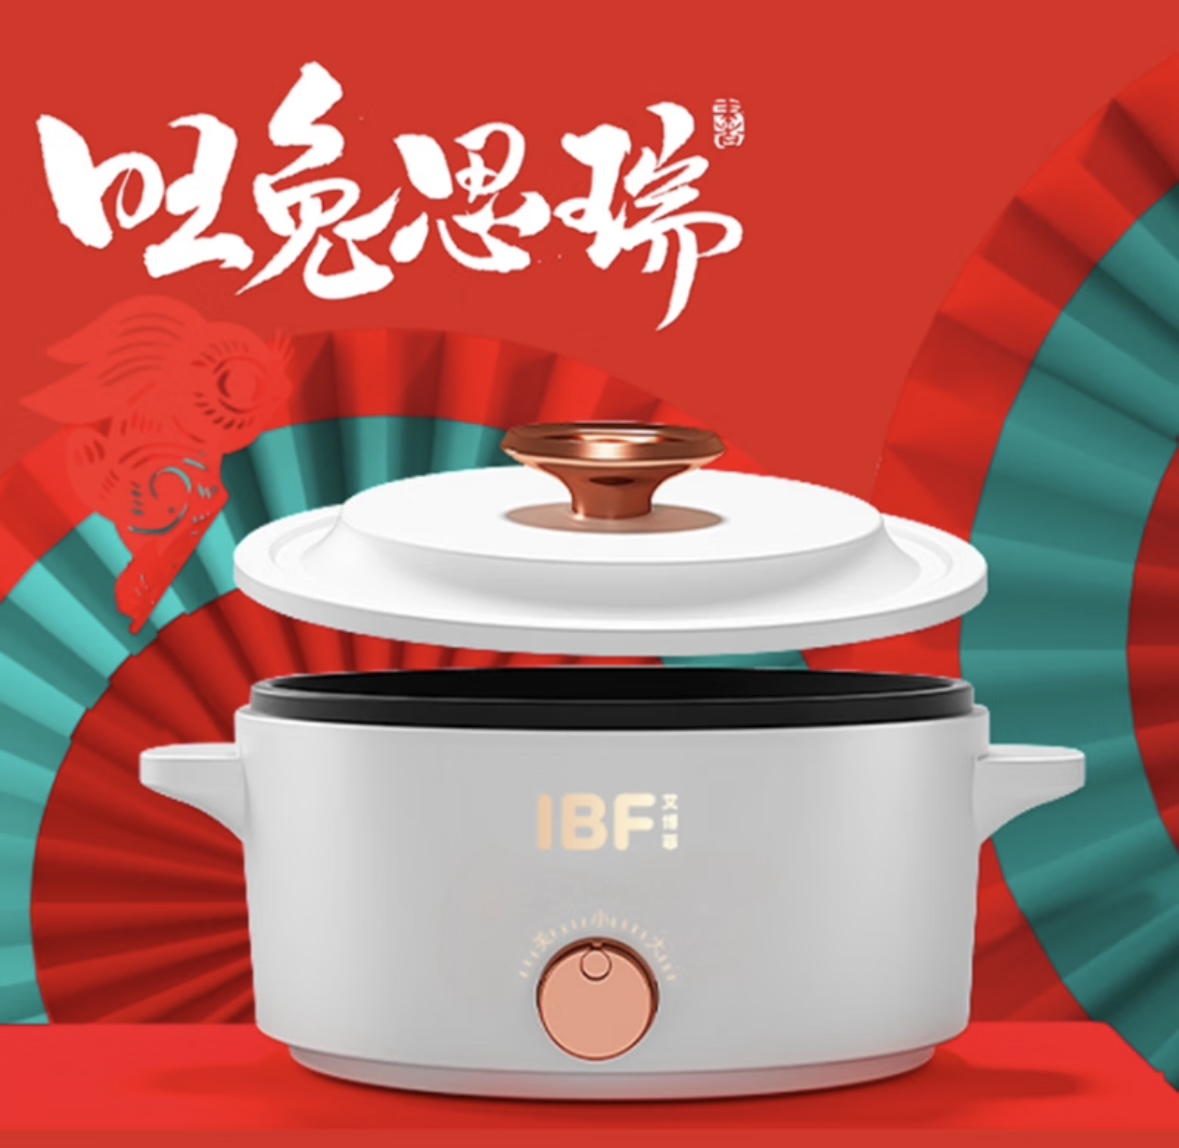 艾博菲 多功能电煮锅IBFD-037-1（台）产品规格:1600ML，产品材质:高密度精铁